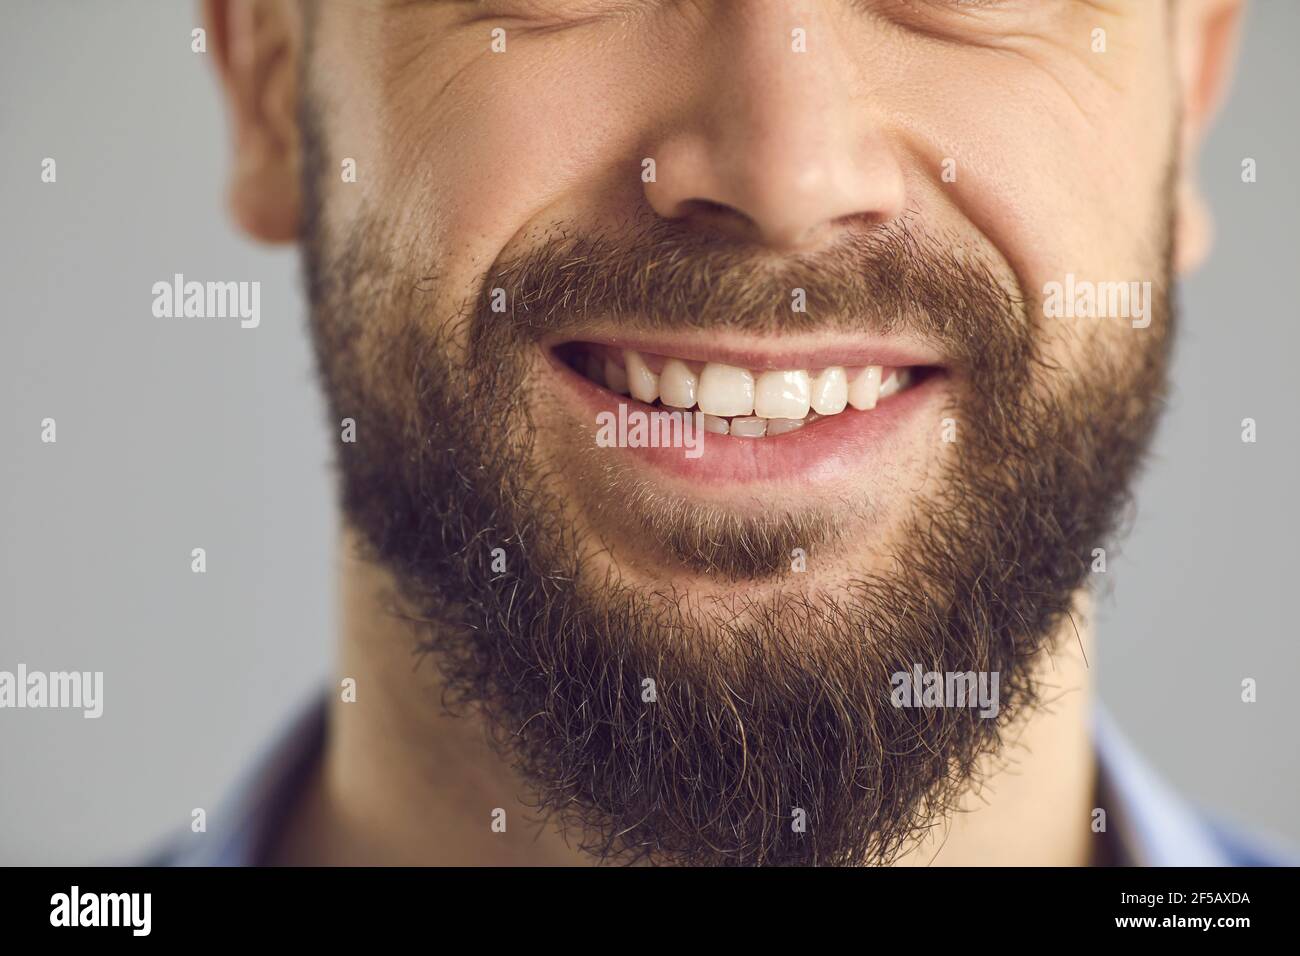 Primo piano studio di foto della parte inferiore del volto di felice giovane sorridente con barba marrone Foto Stock